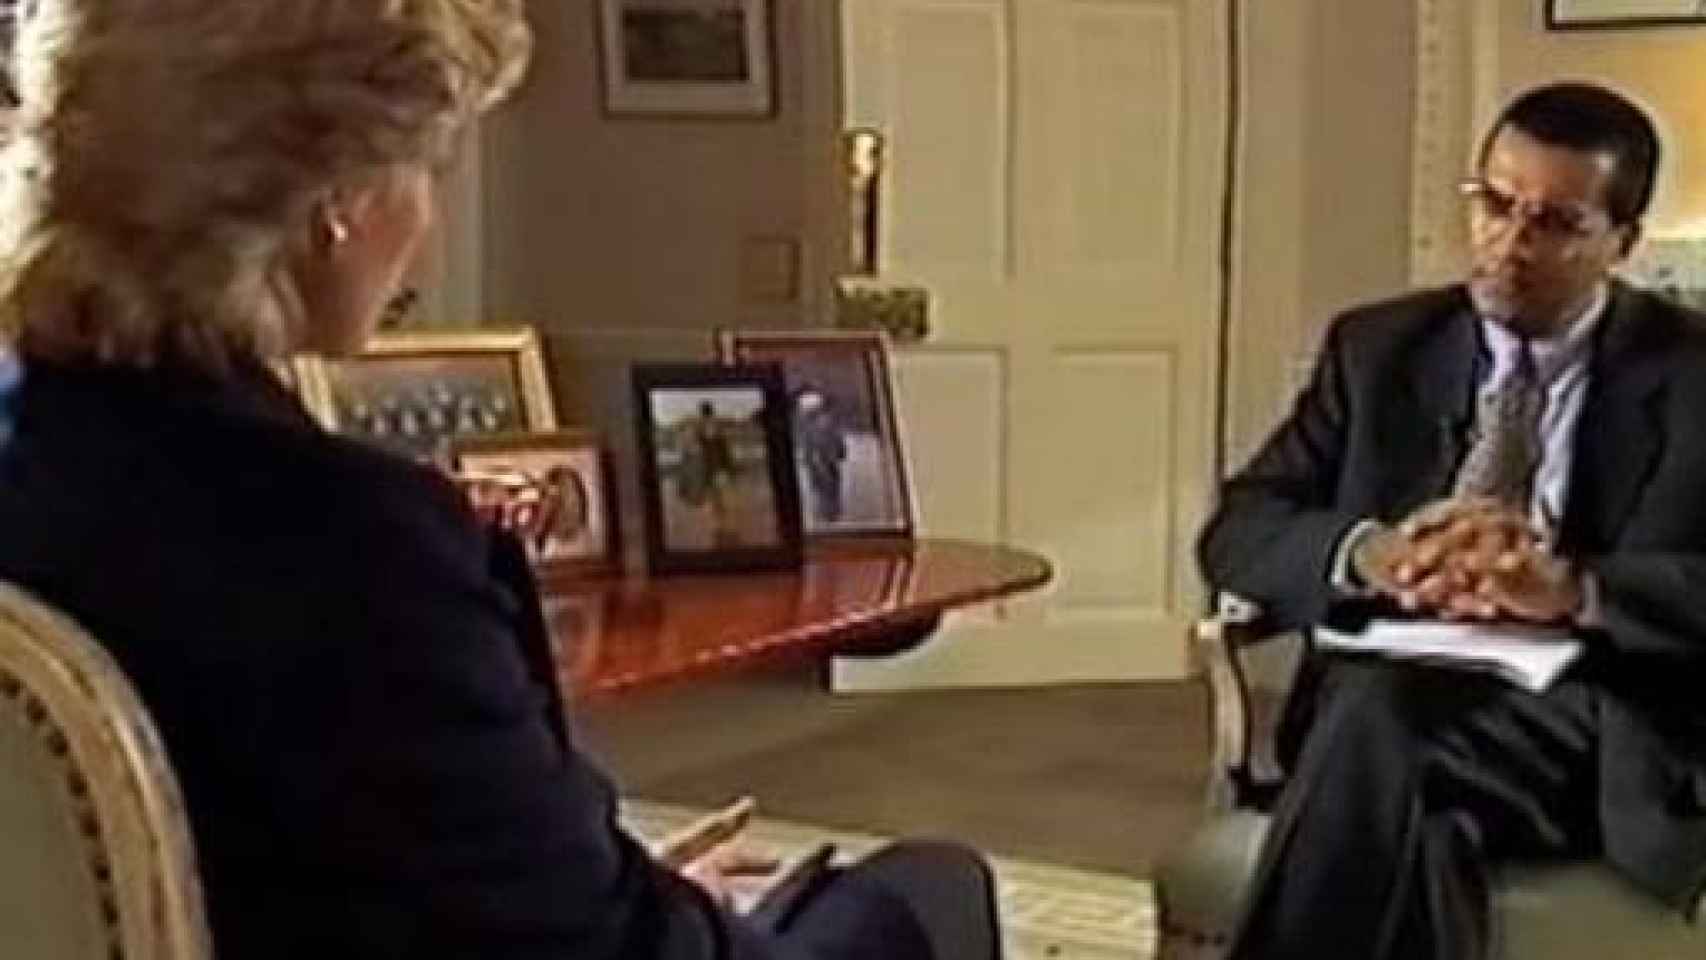 Diana de Gales y Martin Bashir durante la famosa entrevista.